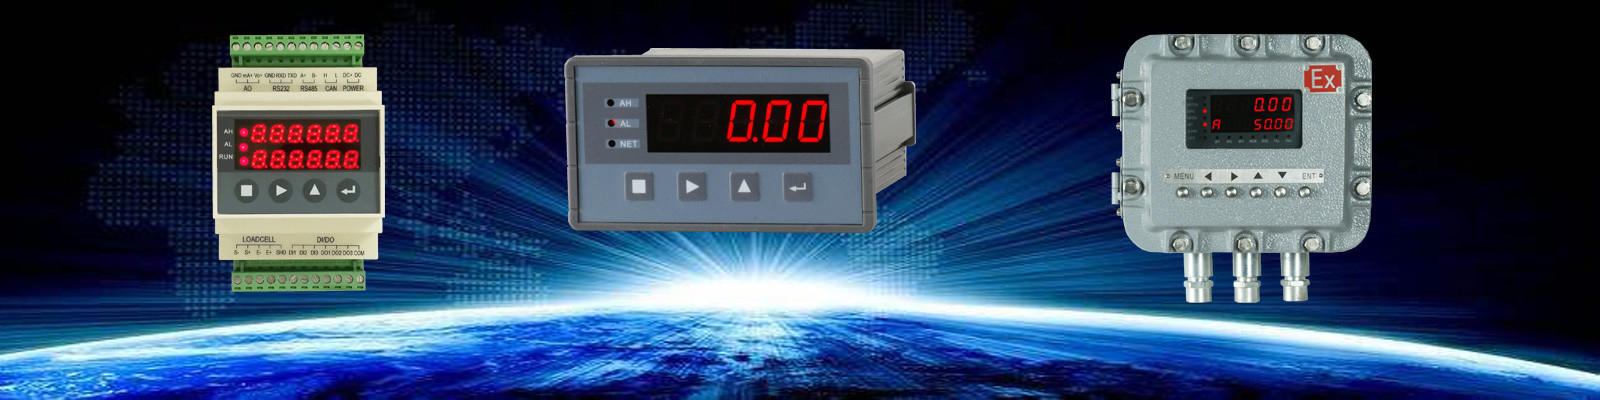 Electronic Weighing Indicator